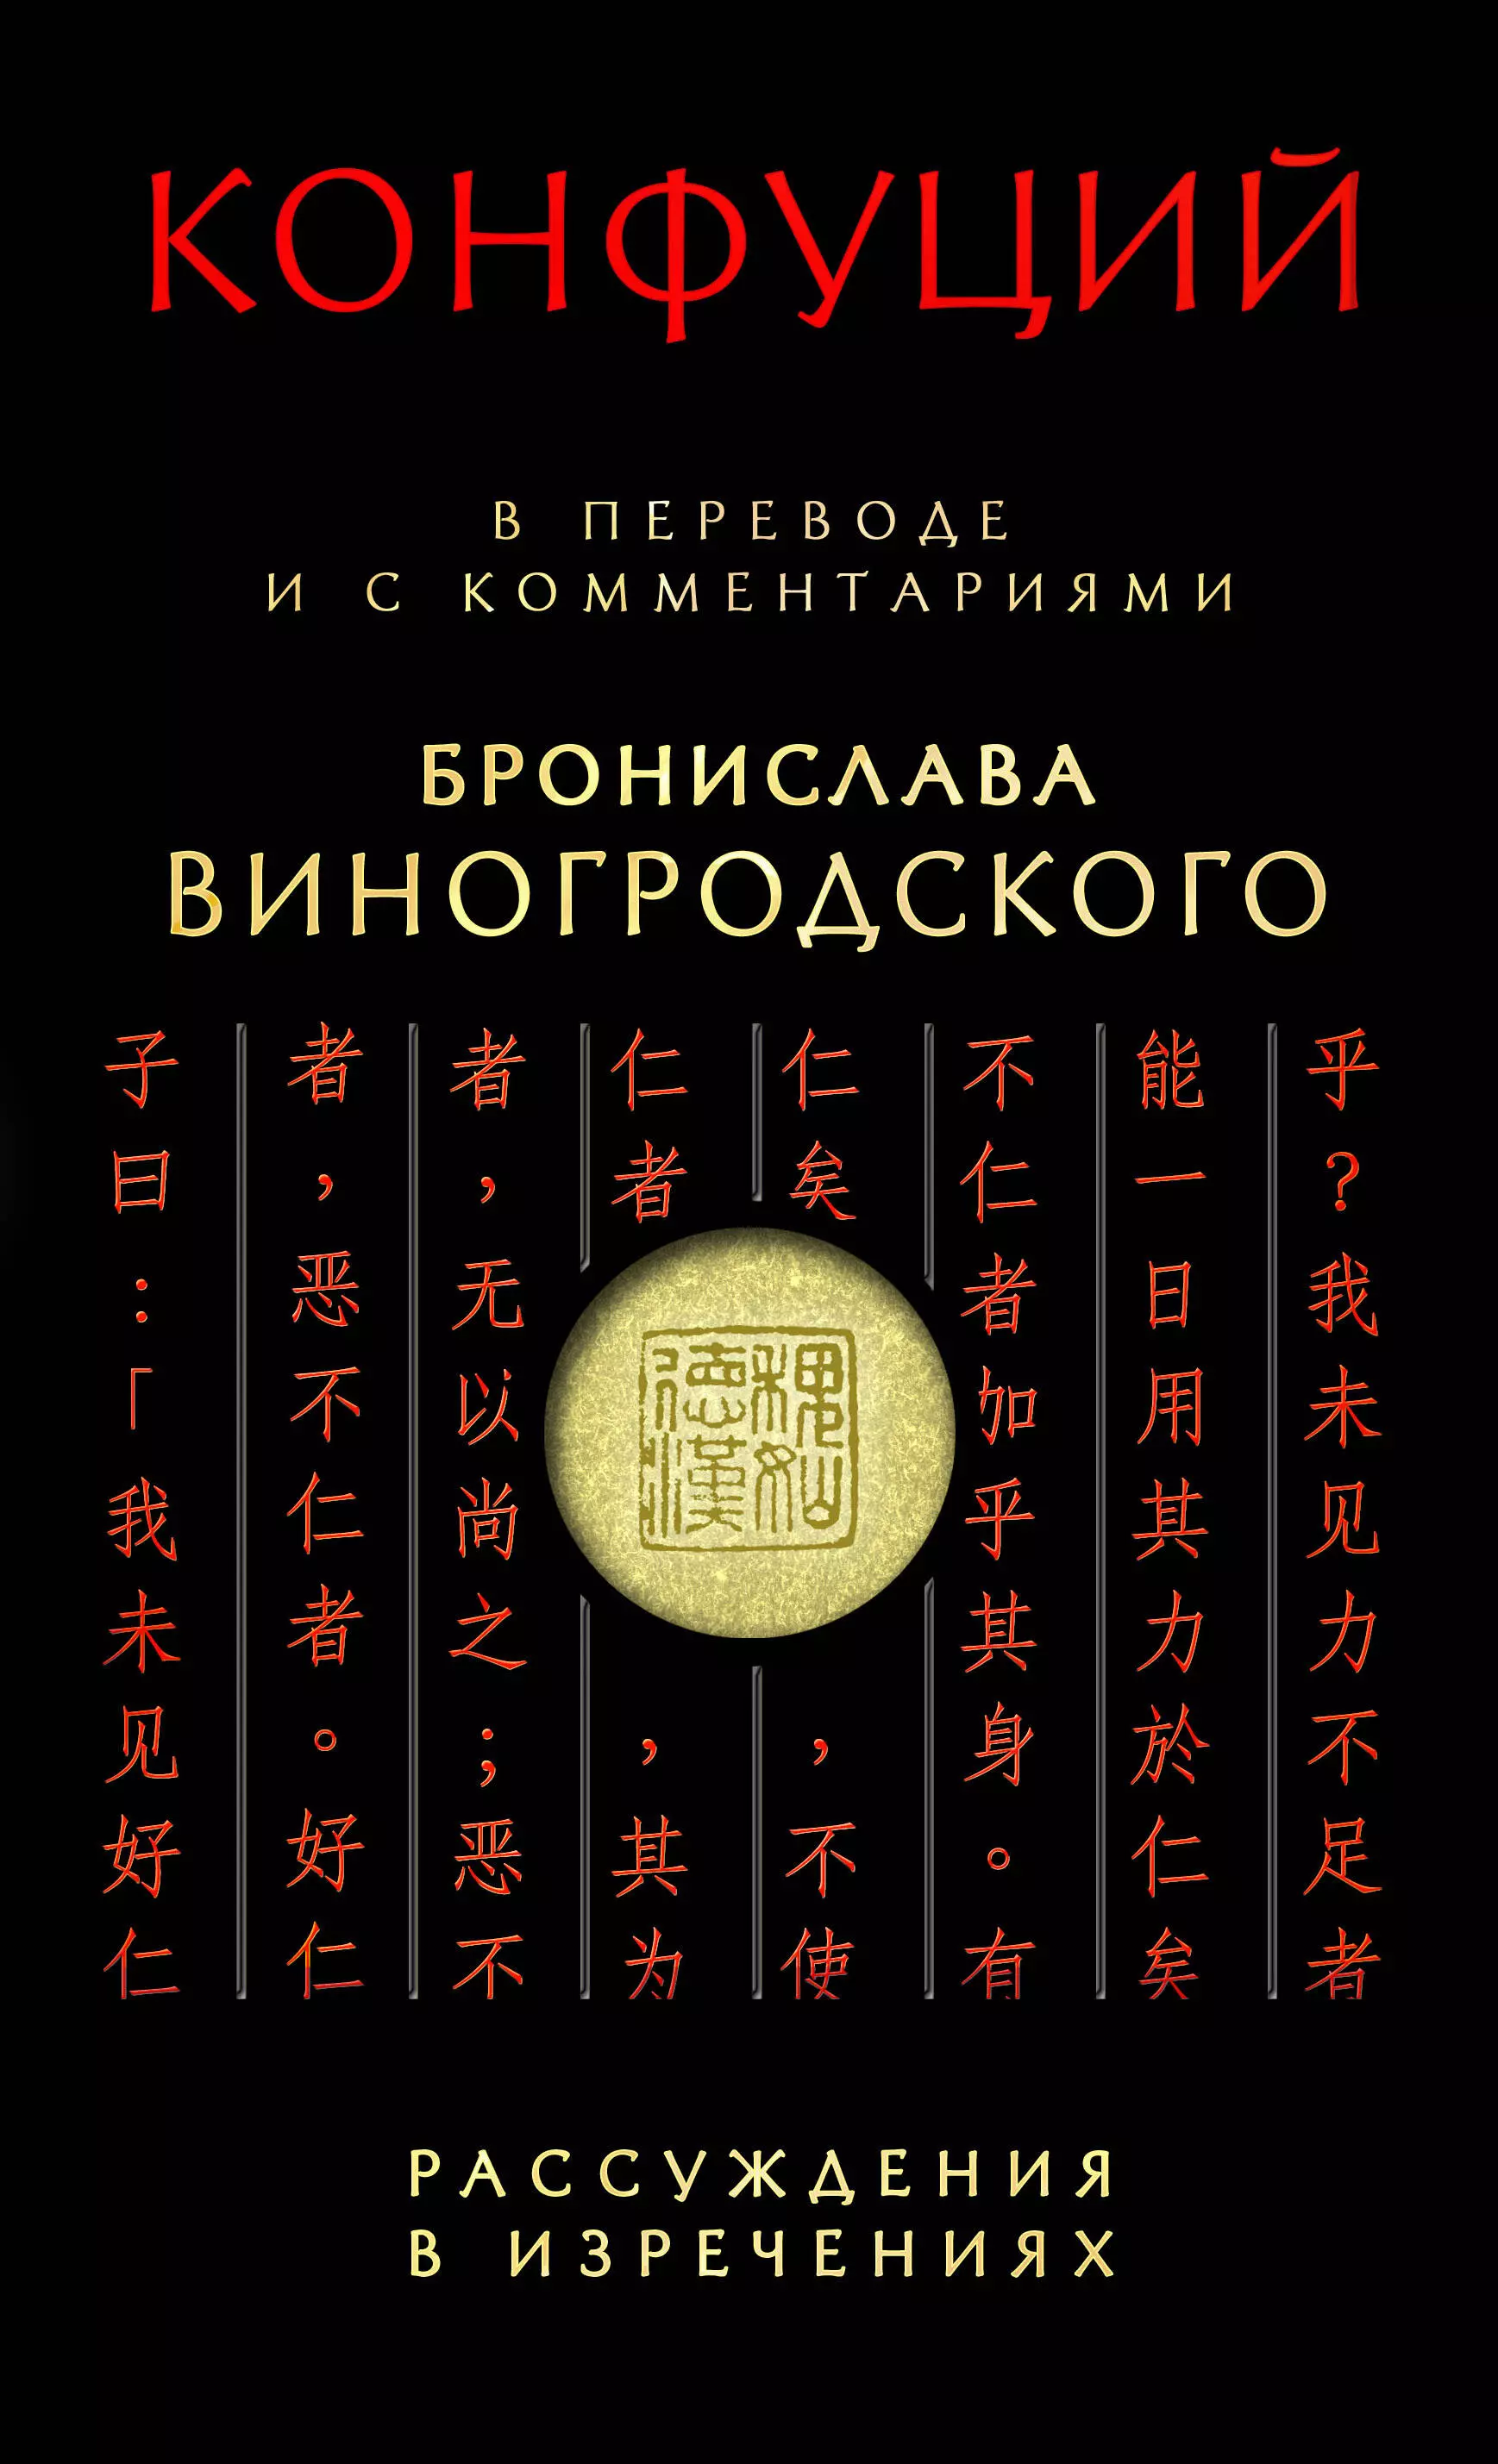 Конфуций - Конфуций Рассуждения в изречениях:в пер.и с ком.Б.Виногродского